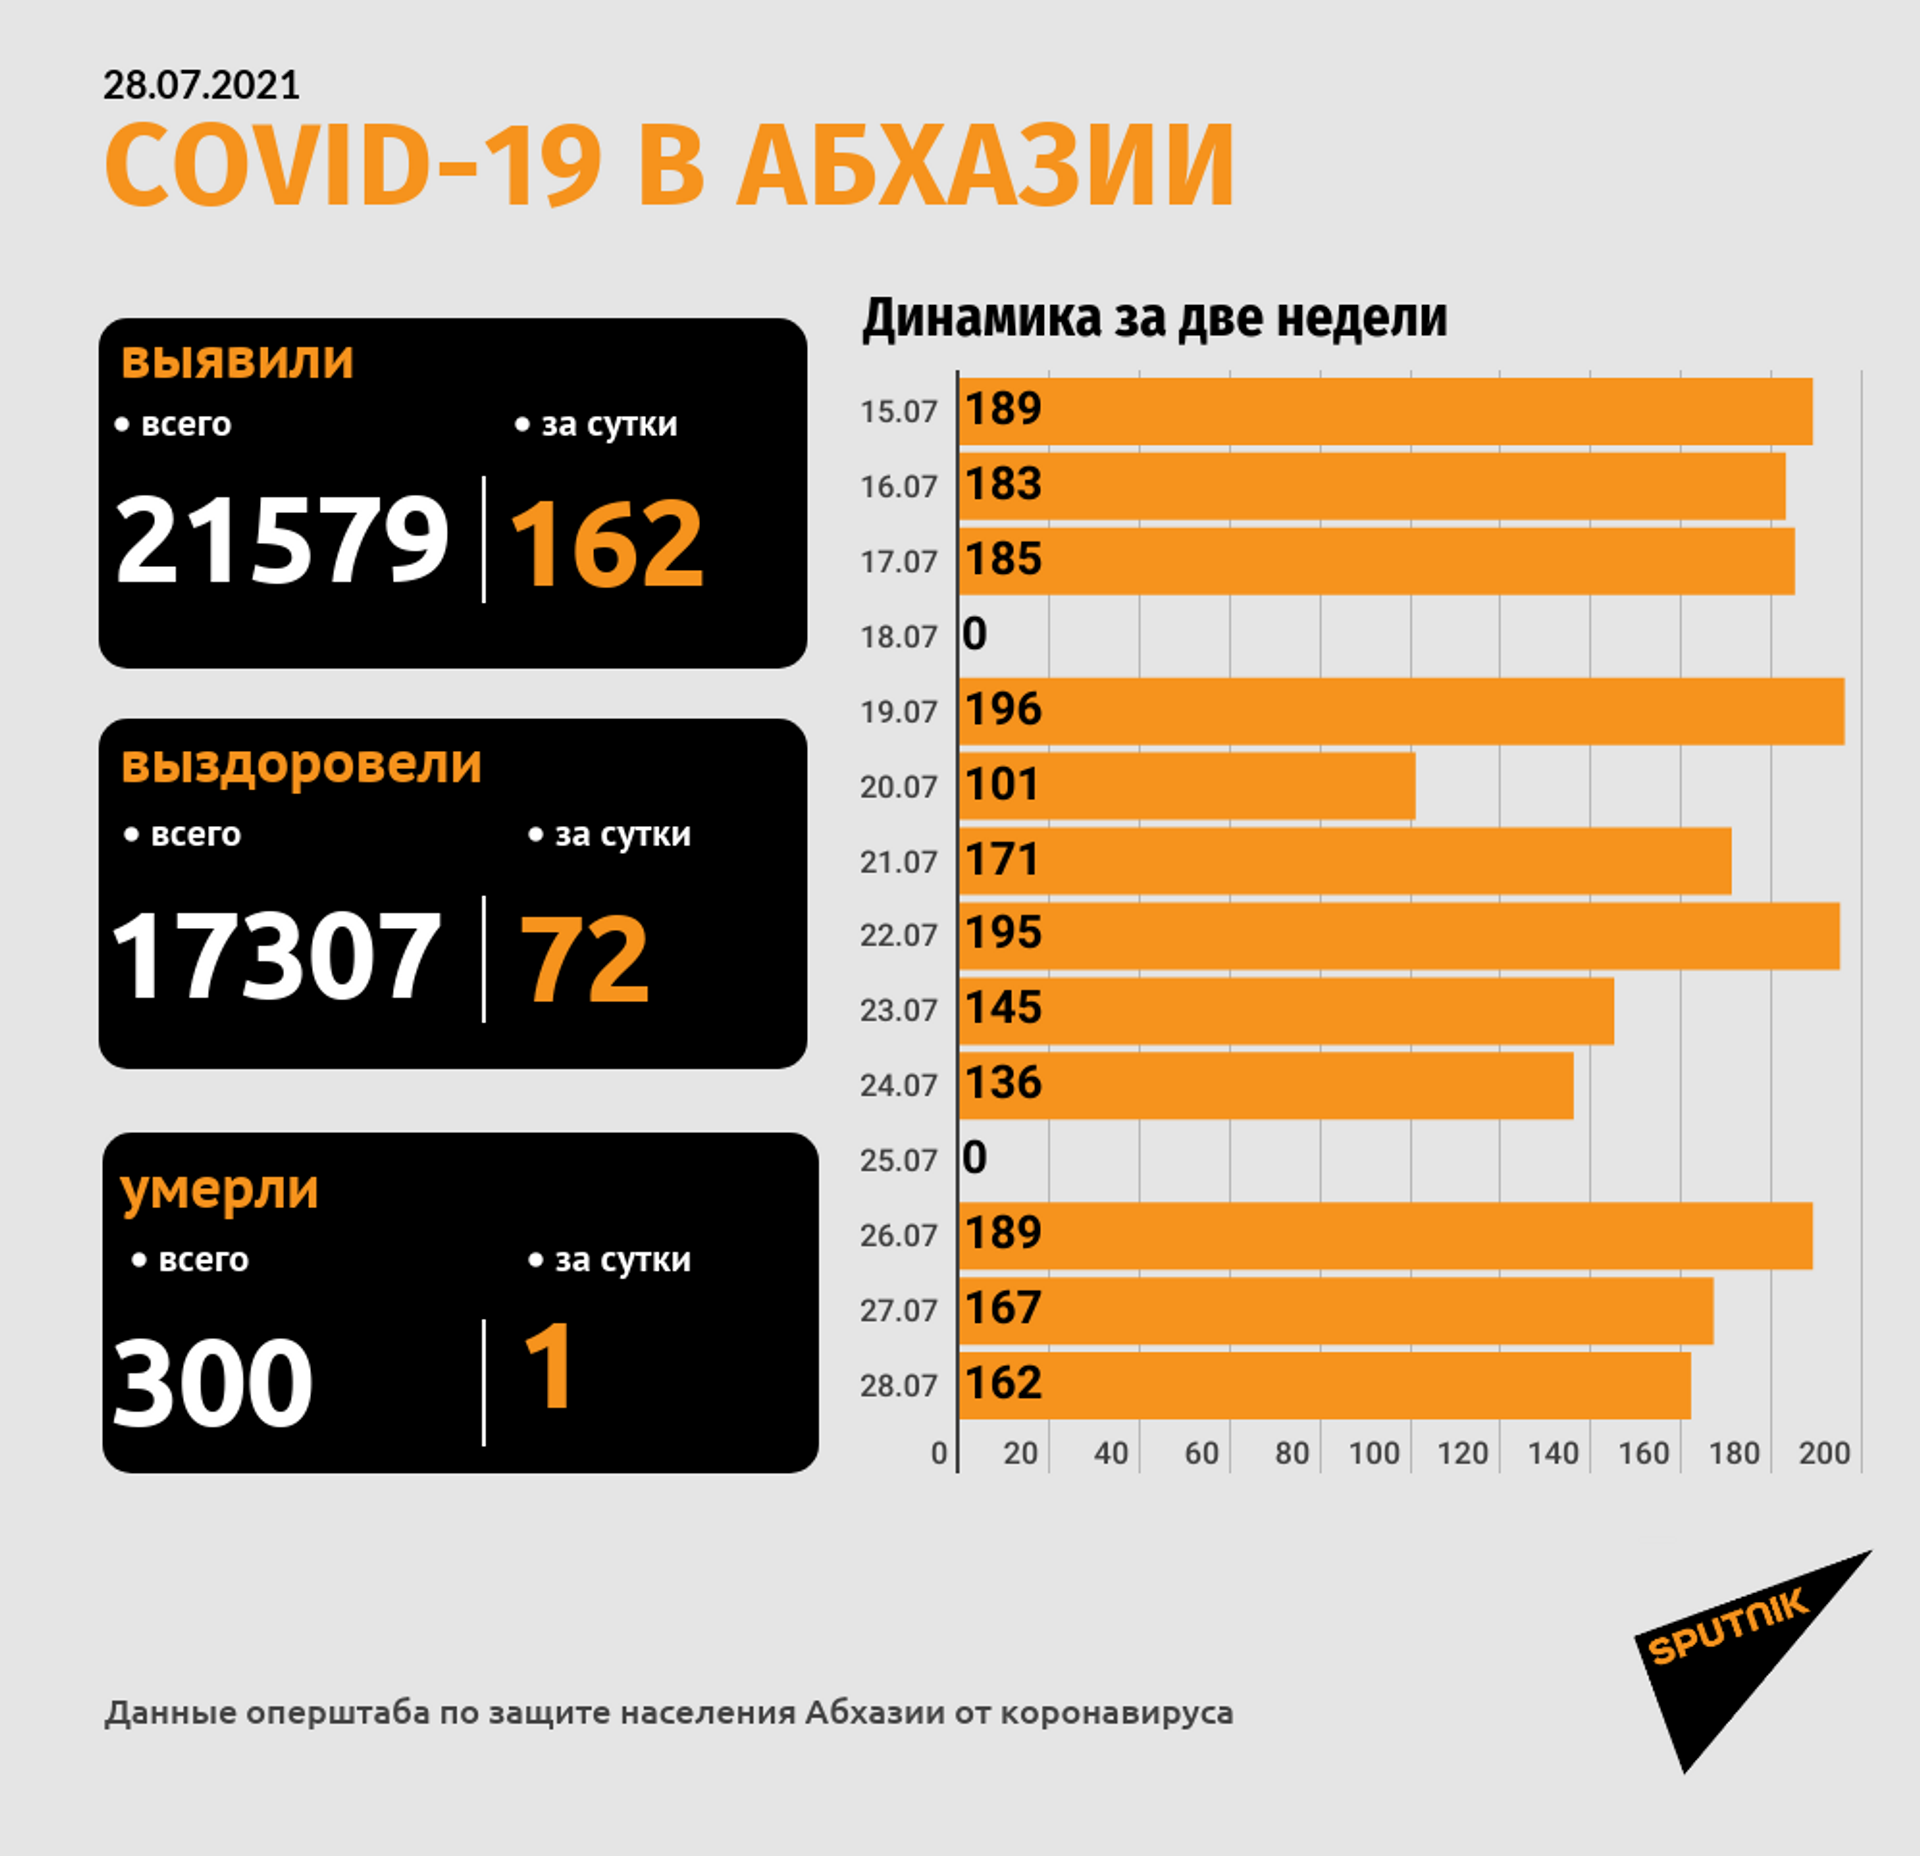 Число смертей с коронавирусом в Абхазии достигло 300 - Sputnik Абхазия, 1920, 28.07.2021